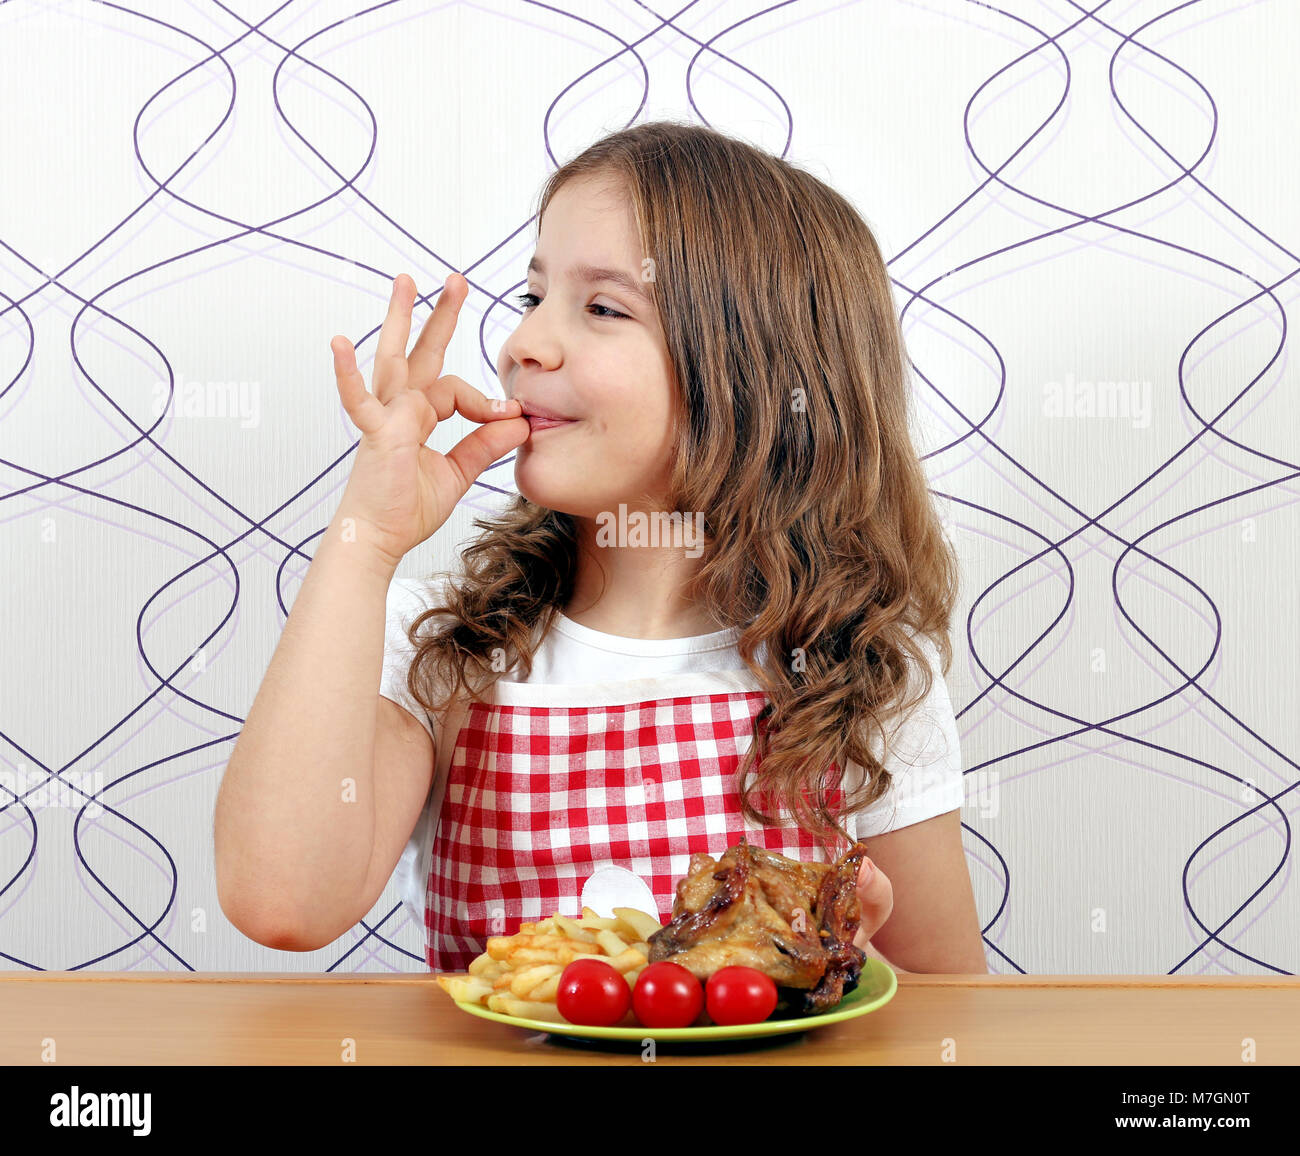 Happy little girl avec ailes de poulet rôties et ok part sign Banque D'Images